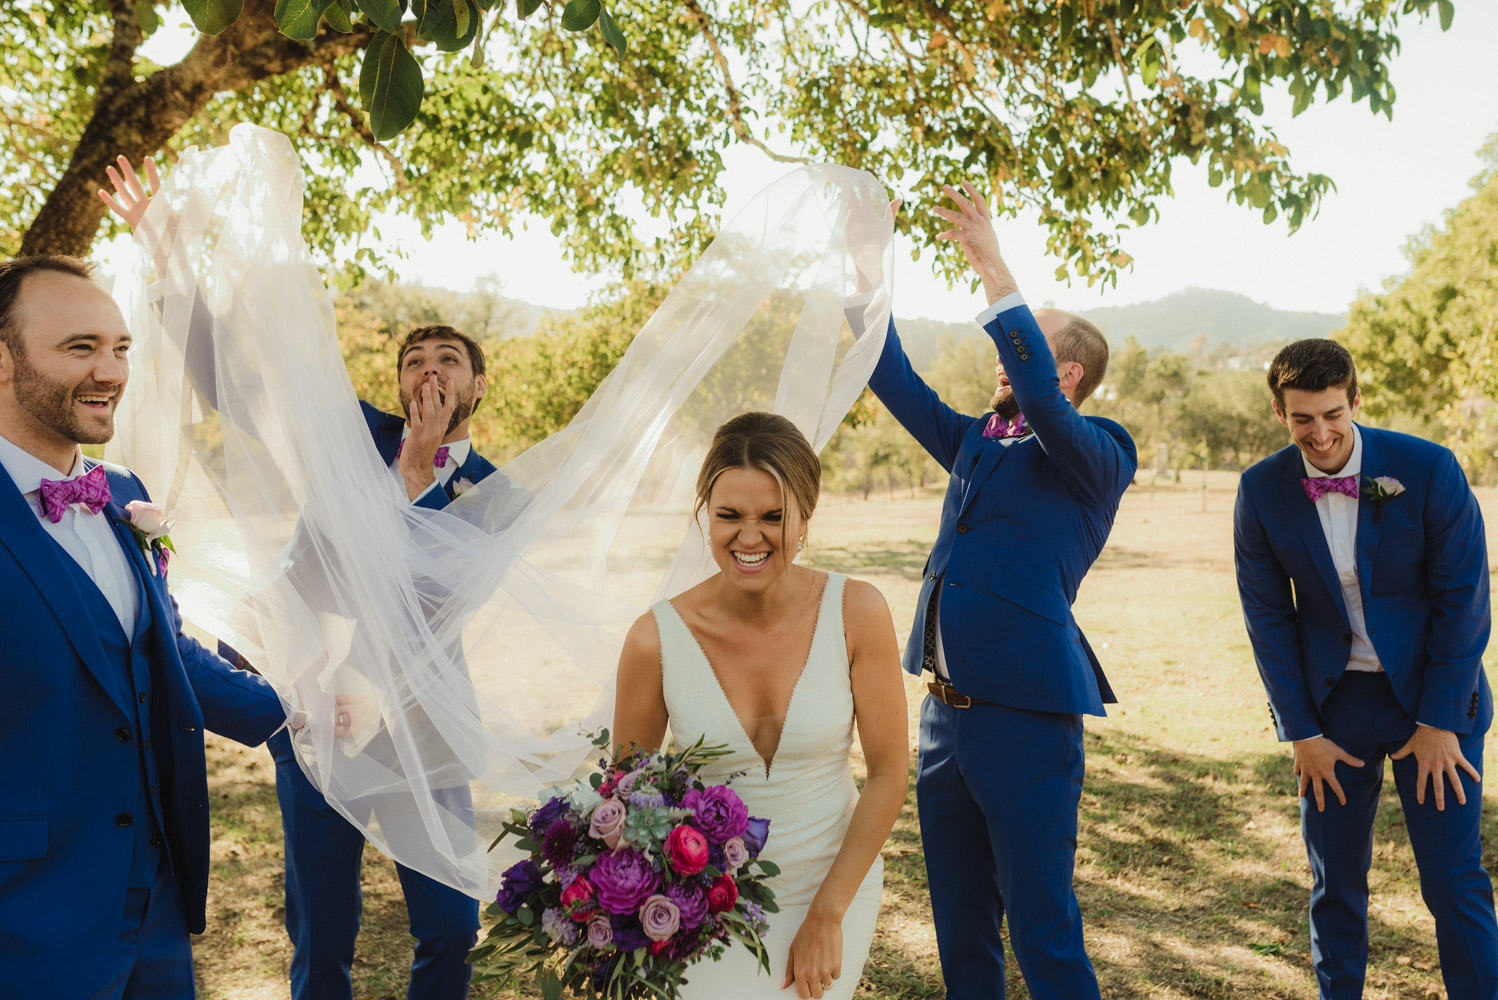 Triple S Ranch Wedding Venue, bride with groomsmen photo